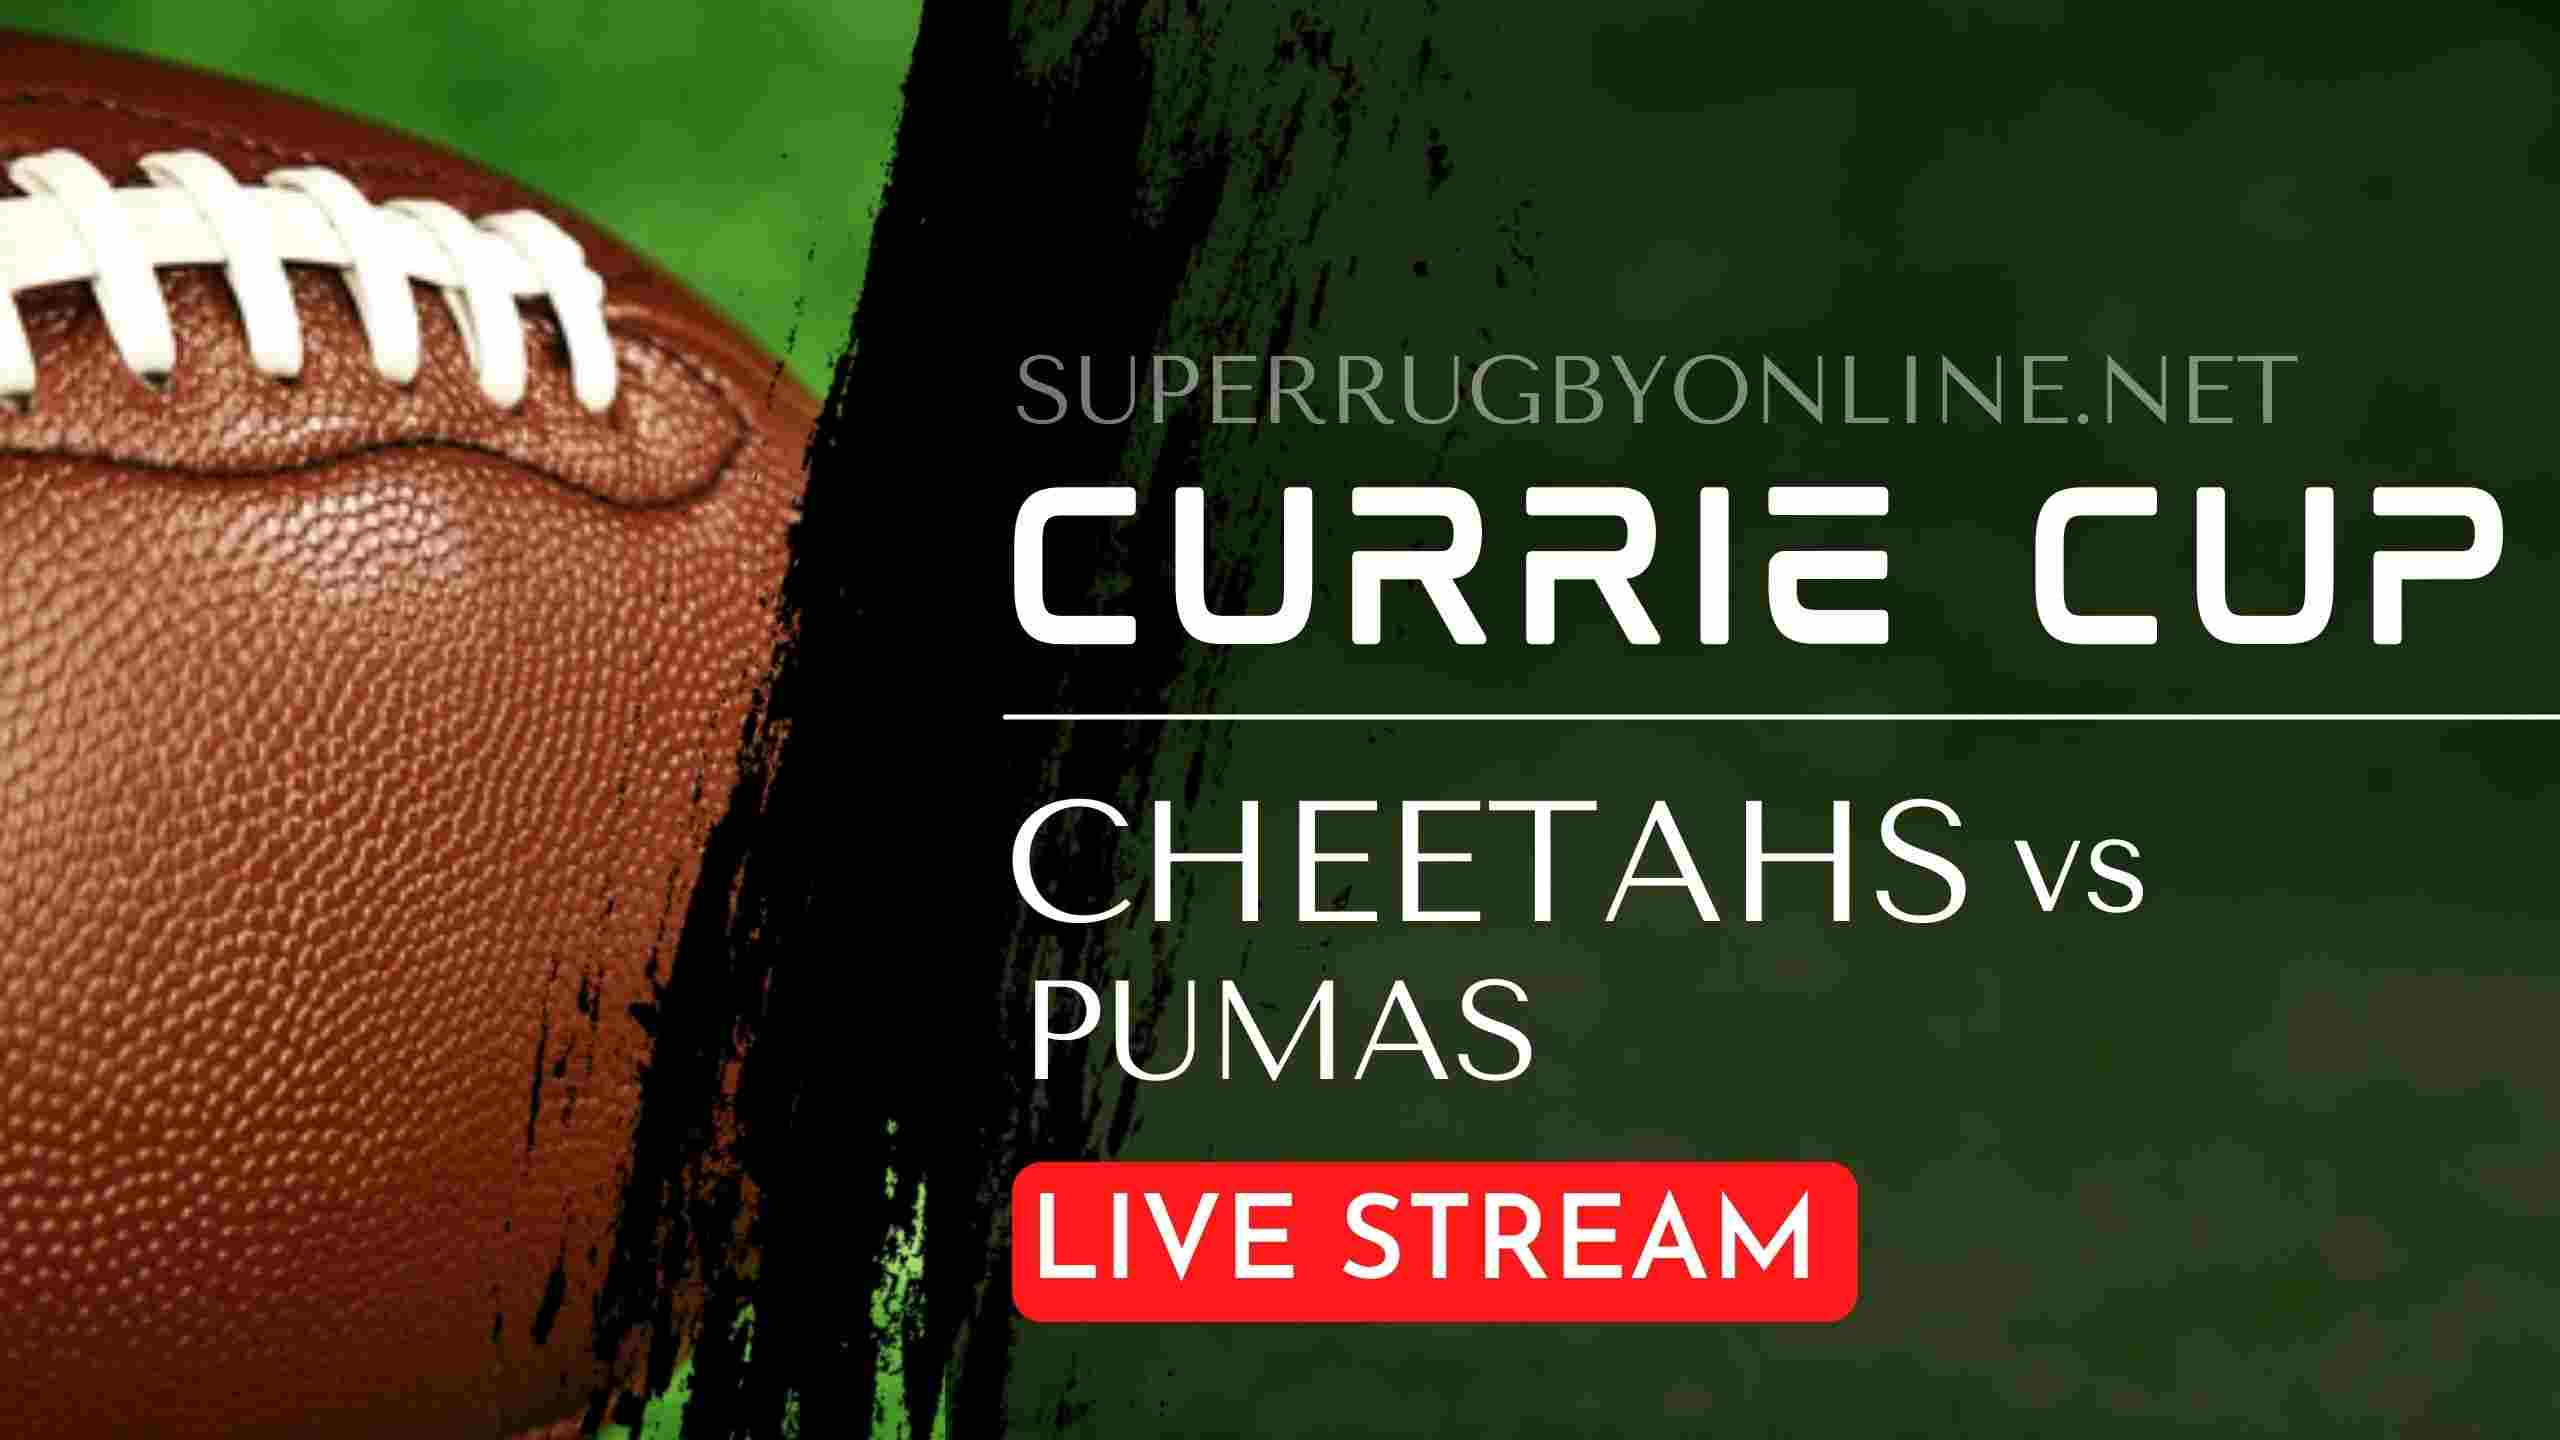 Cheetahs vs Pumas Currie Cup Live Stream